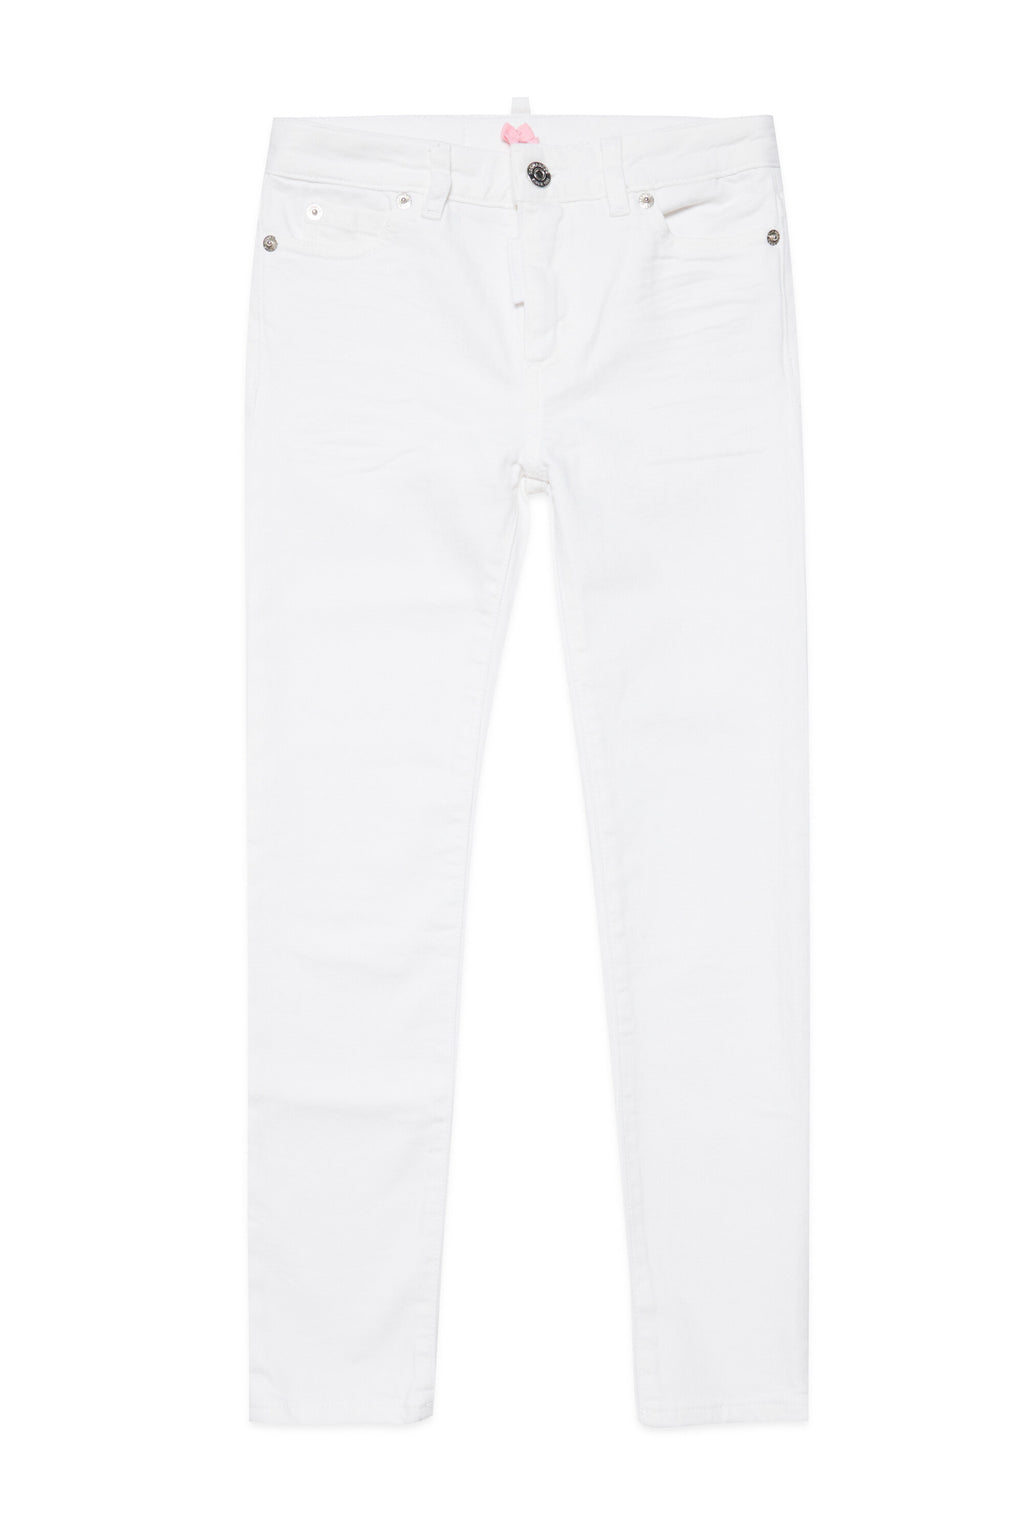 Jeans Twiggy skinny in cotone organico colorato